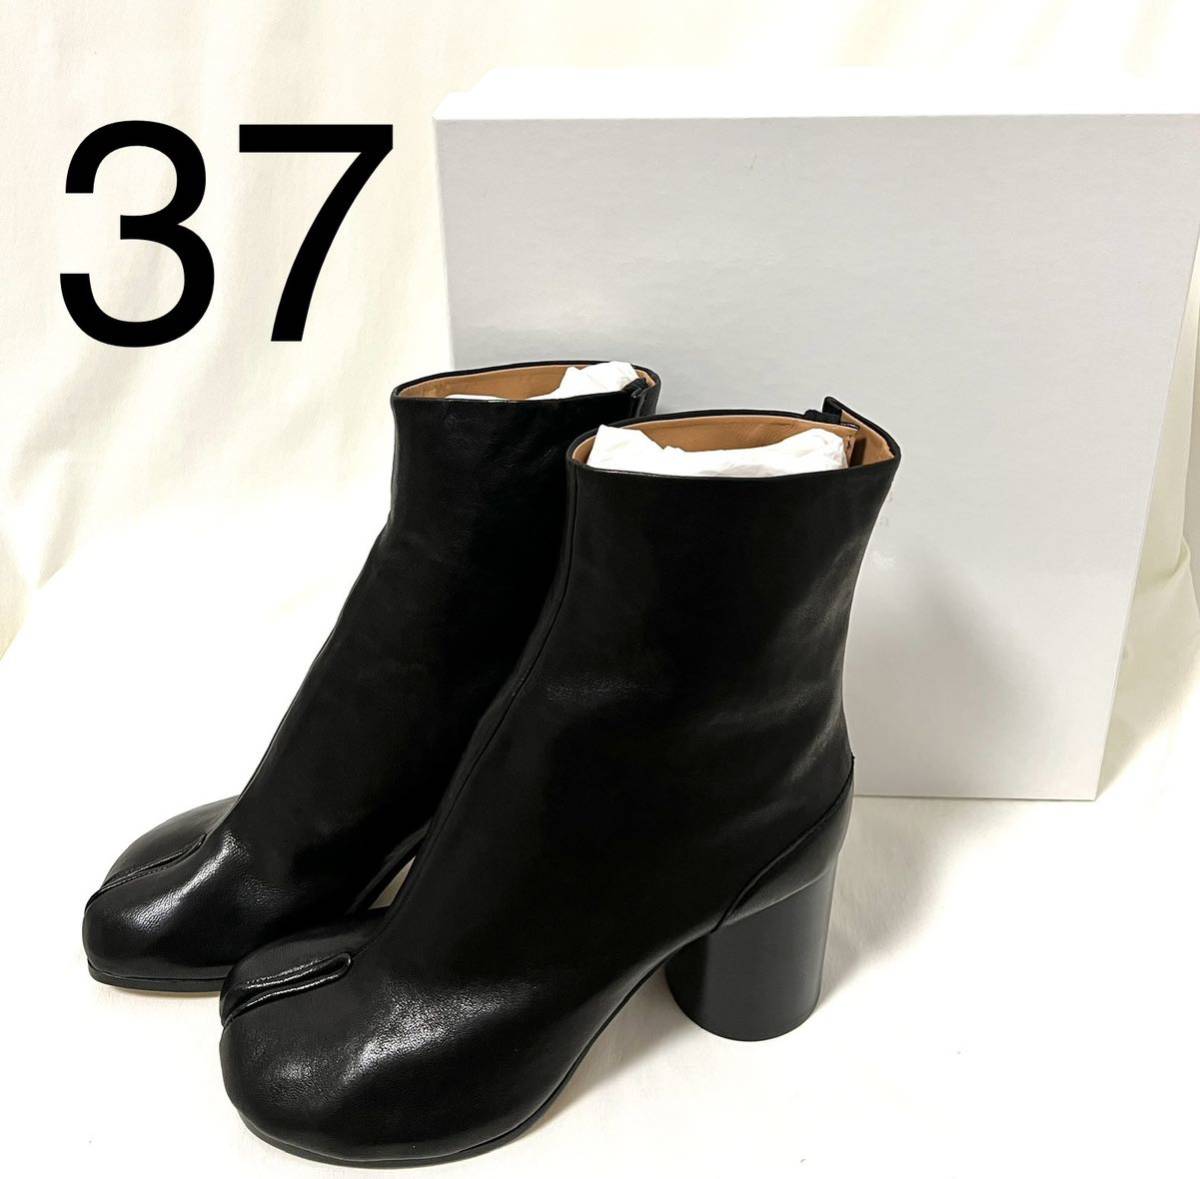 37 ブラック 黒 タビ ブーツ tabi メゾンマルジェラ タビブーツ 足袋